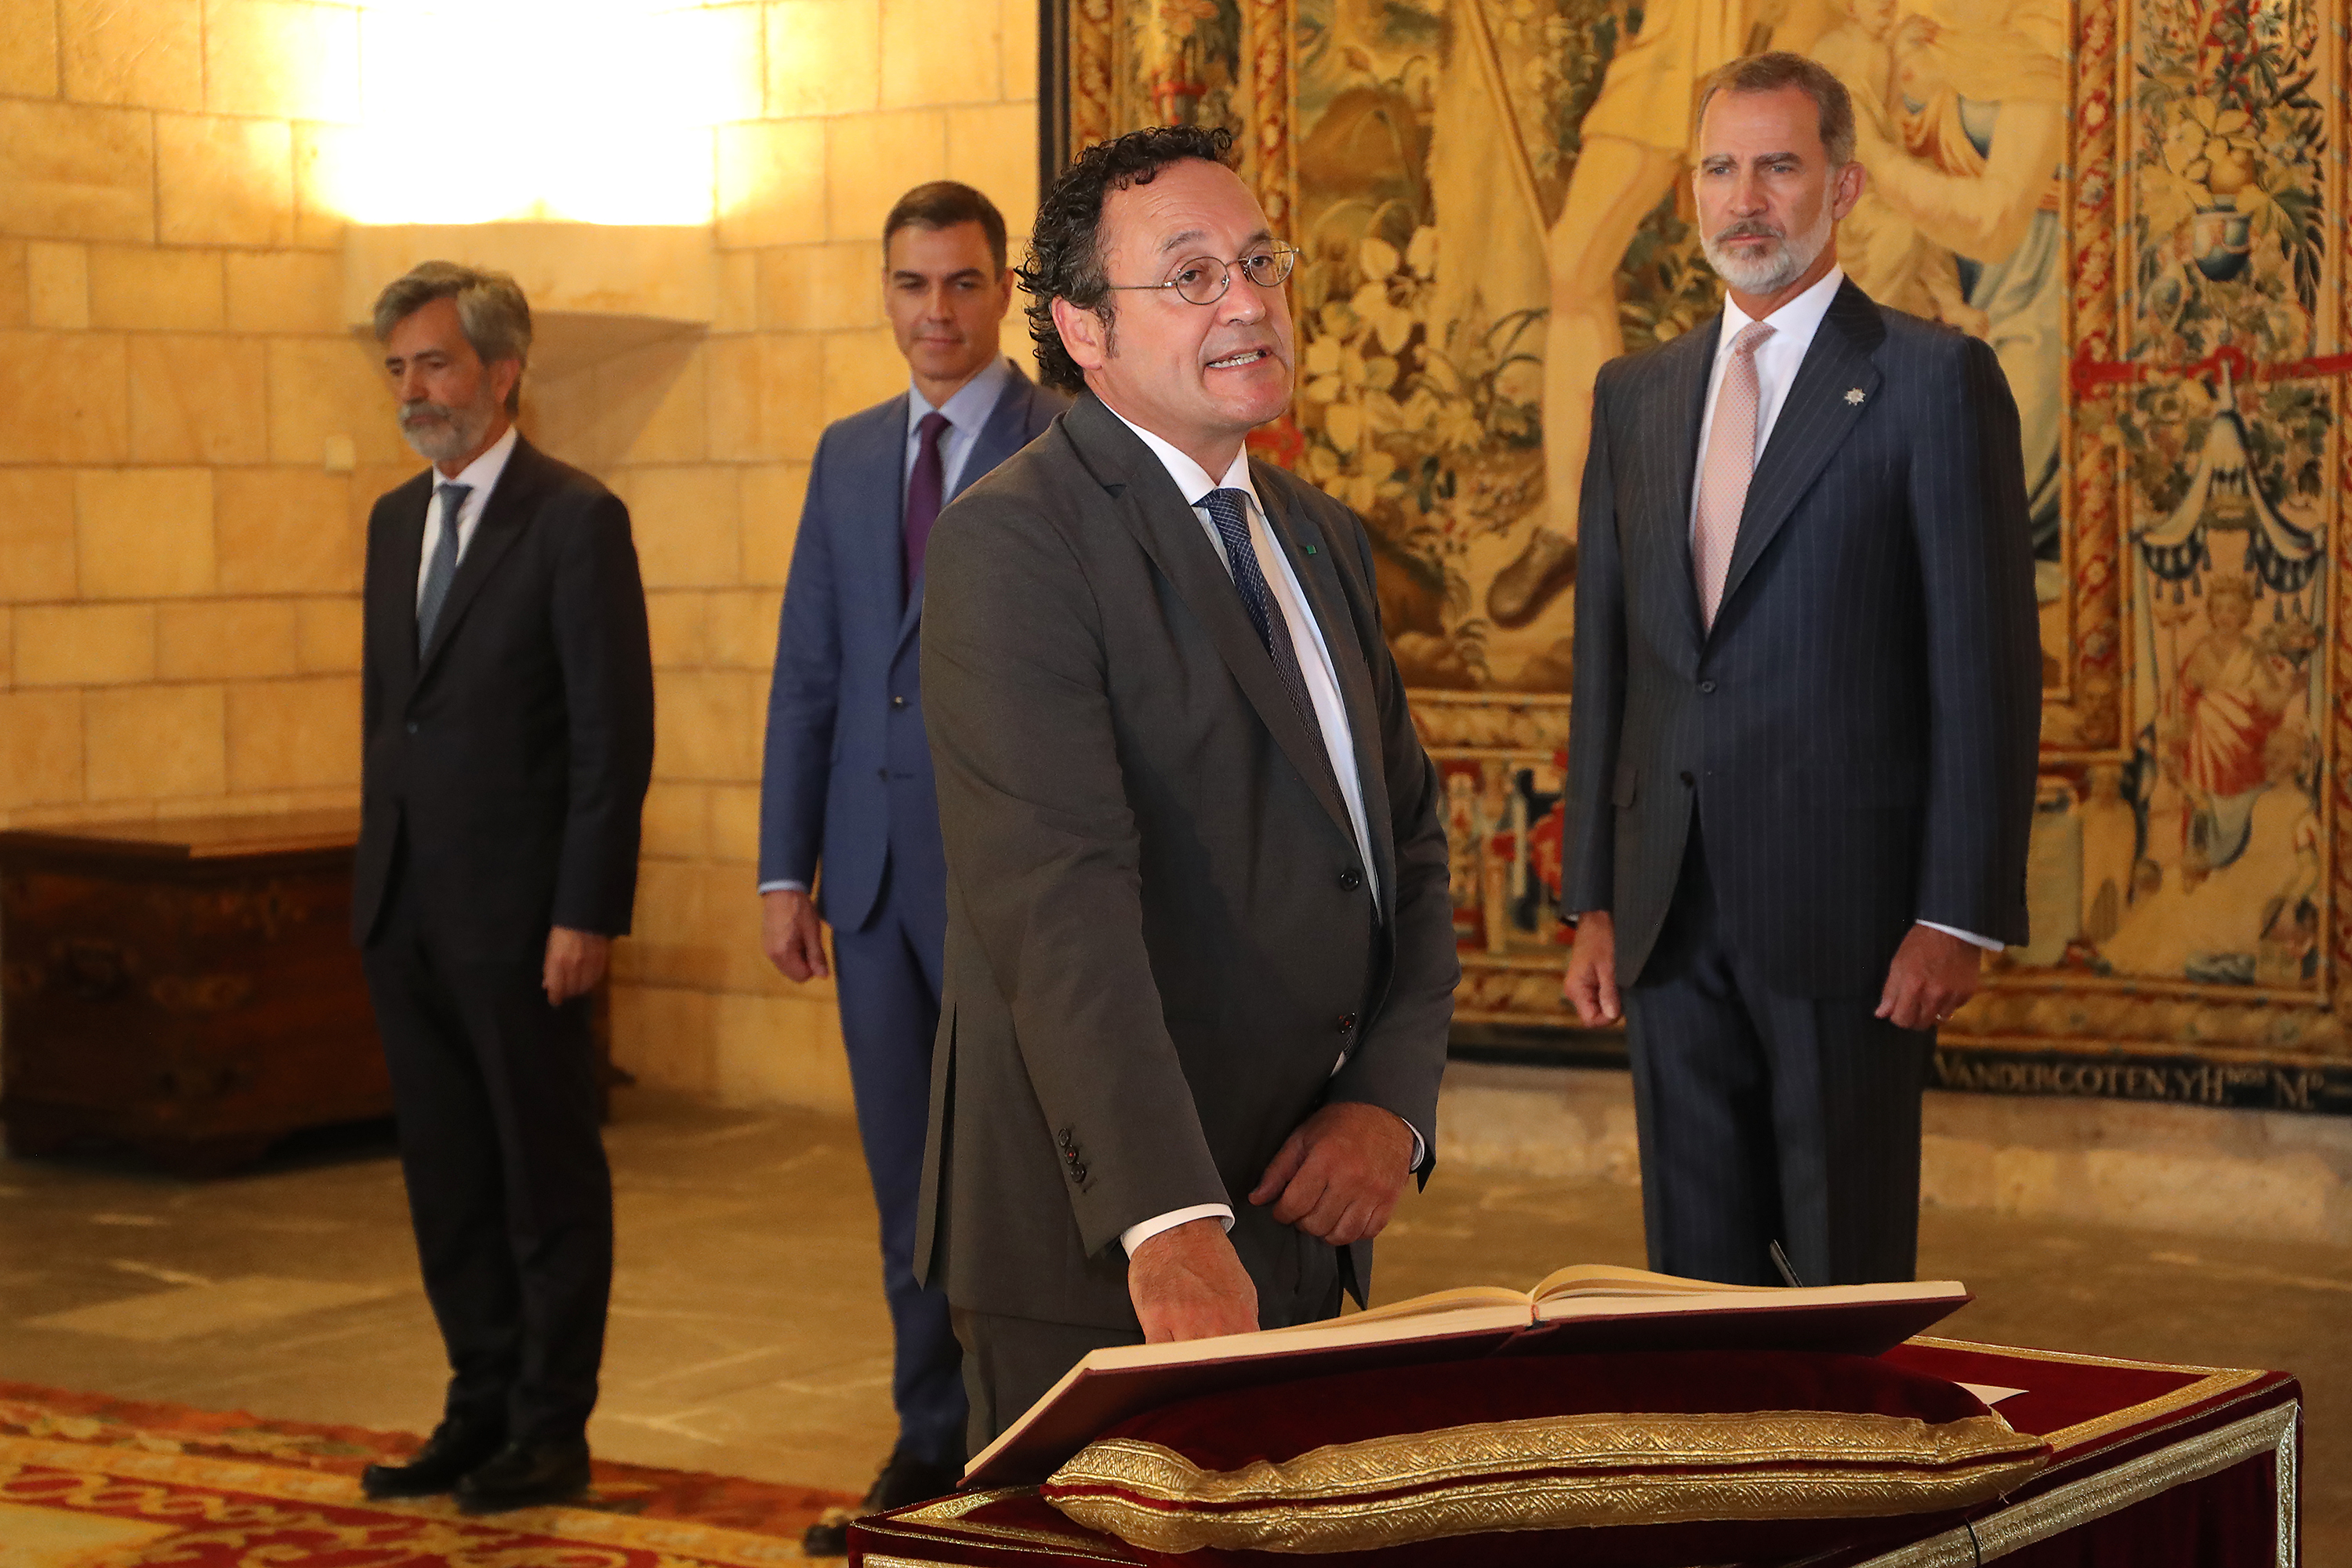 Álvaro García Ortiz a promis ce mardi devant le roi Felipe VI son poste de nouveau procureur général de l'État.